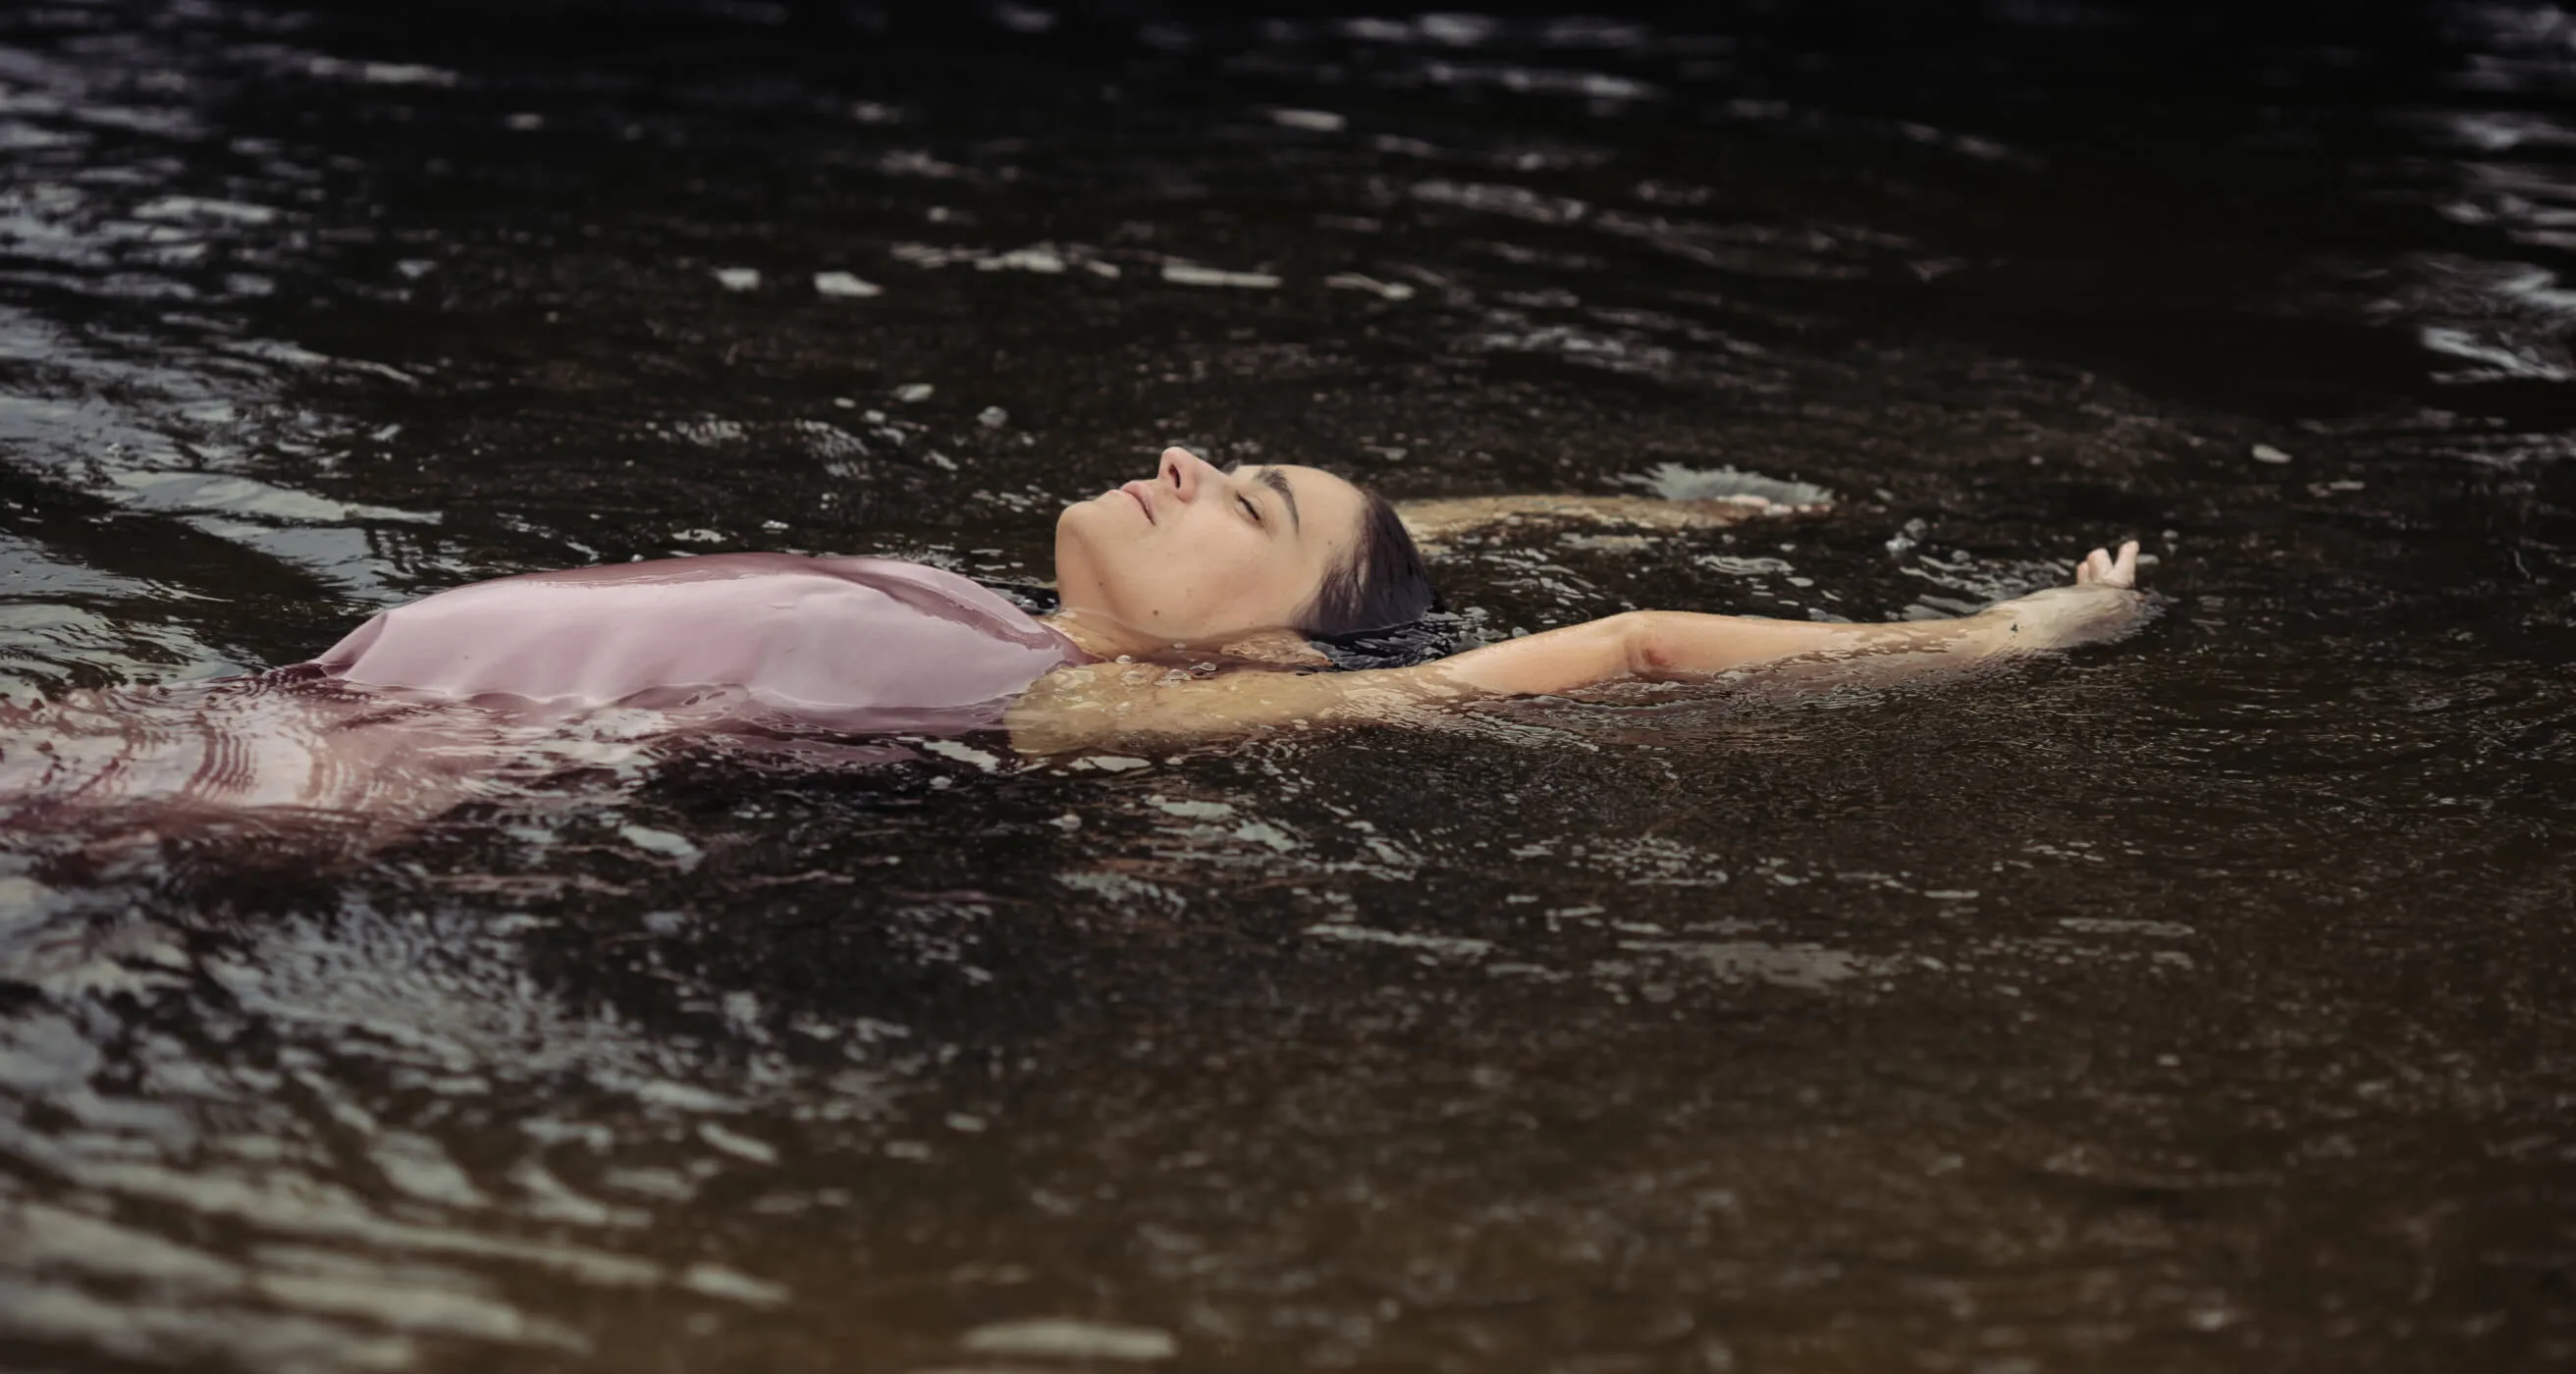 Yoga teacher Tanya swimming in a lake